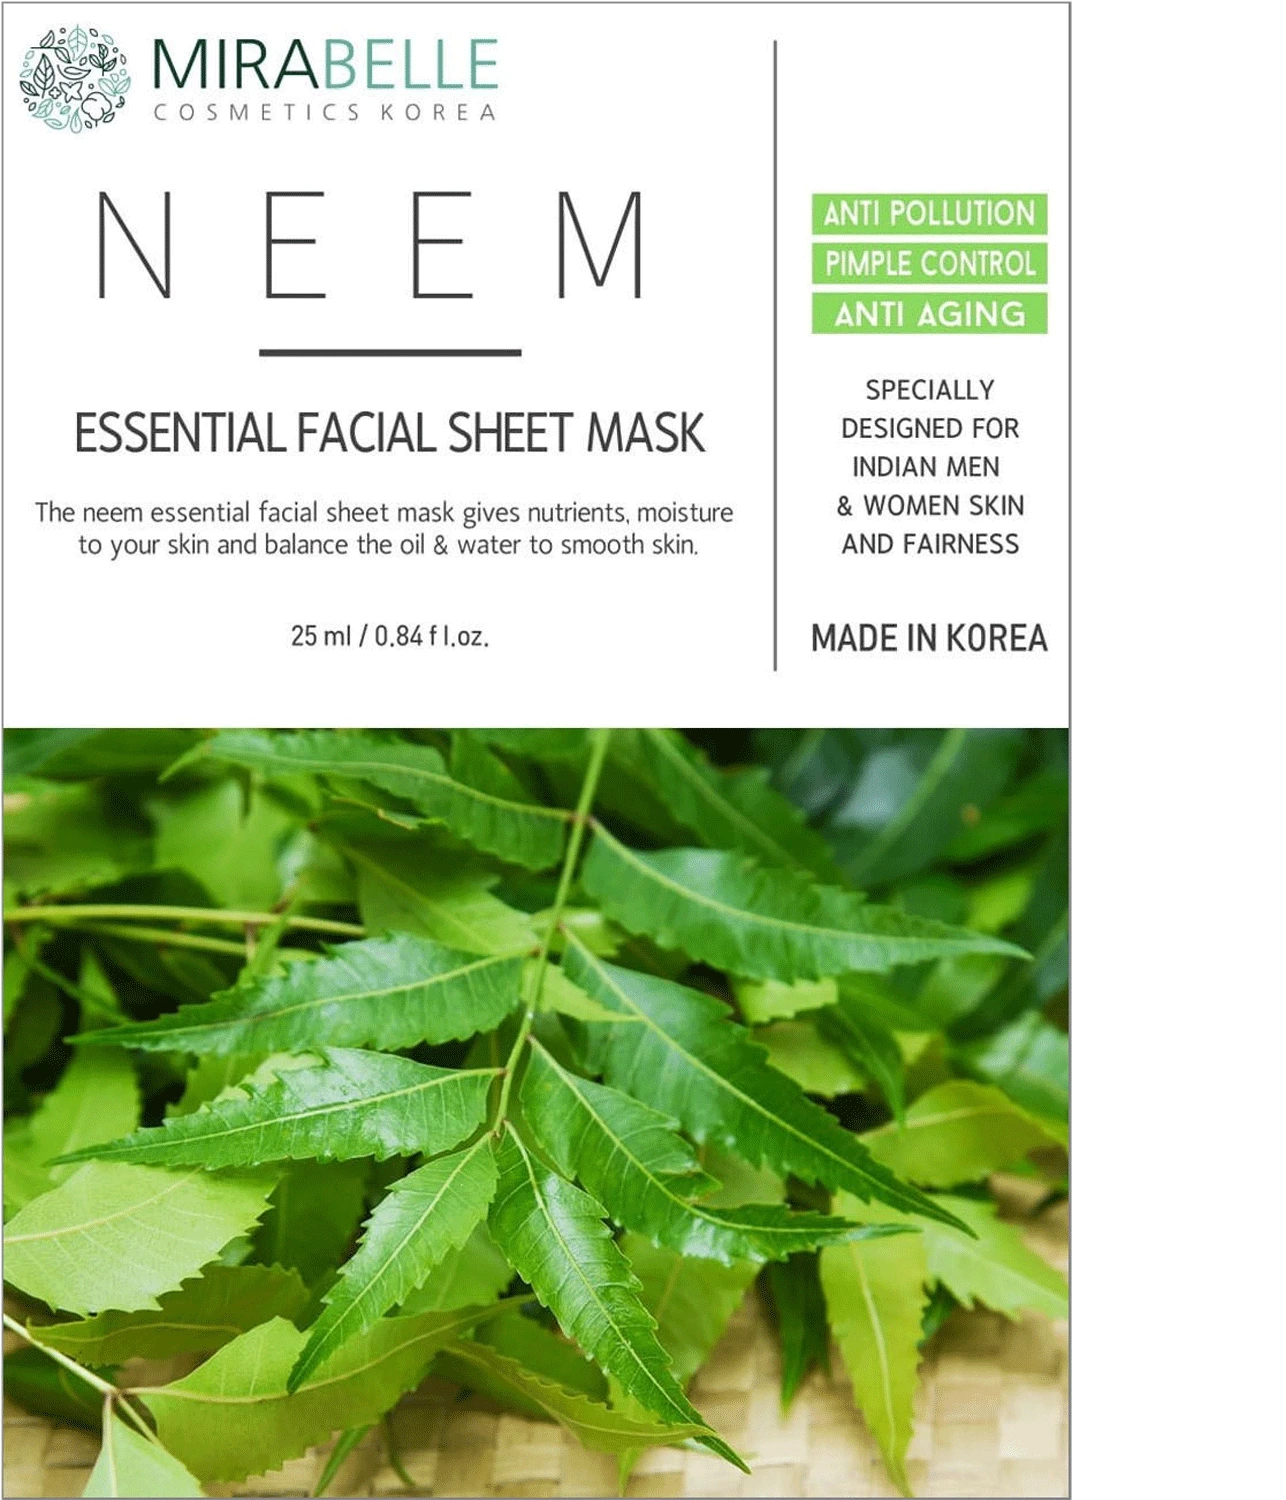 1691052324_mirabelle-korea-neem-essential-facial-sheet-mask-2-1641793952